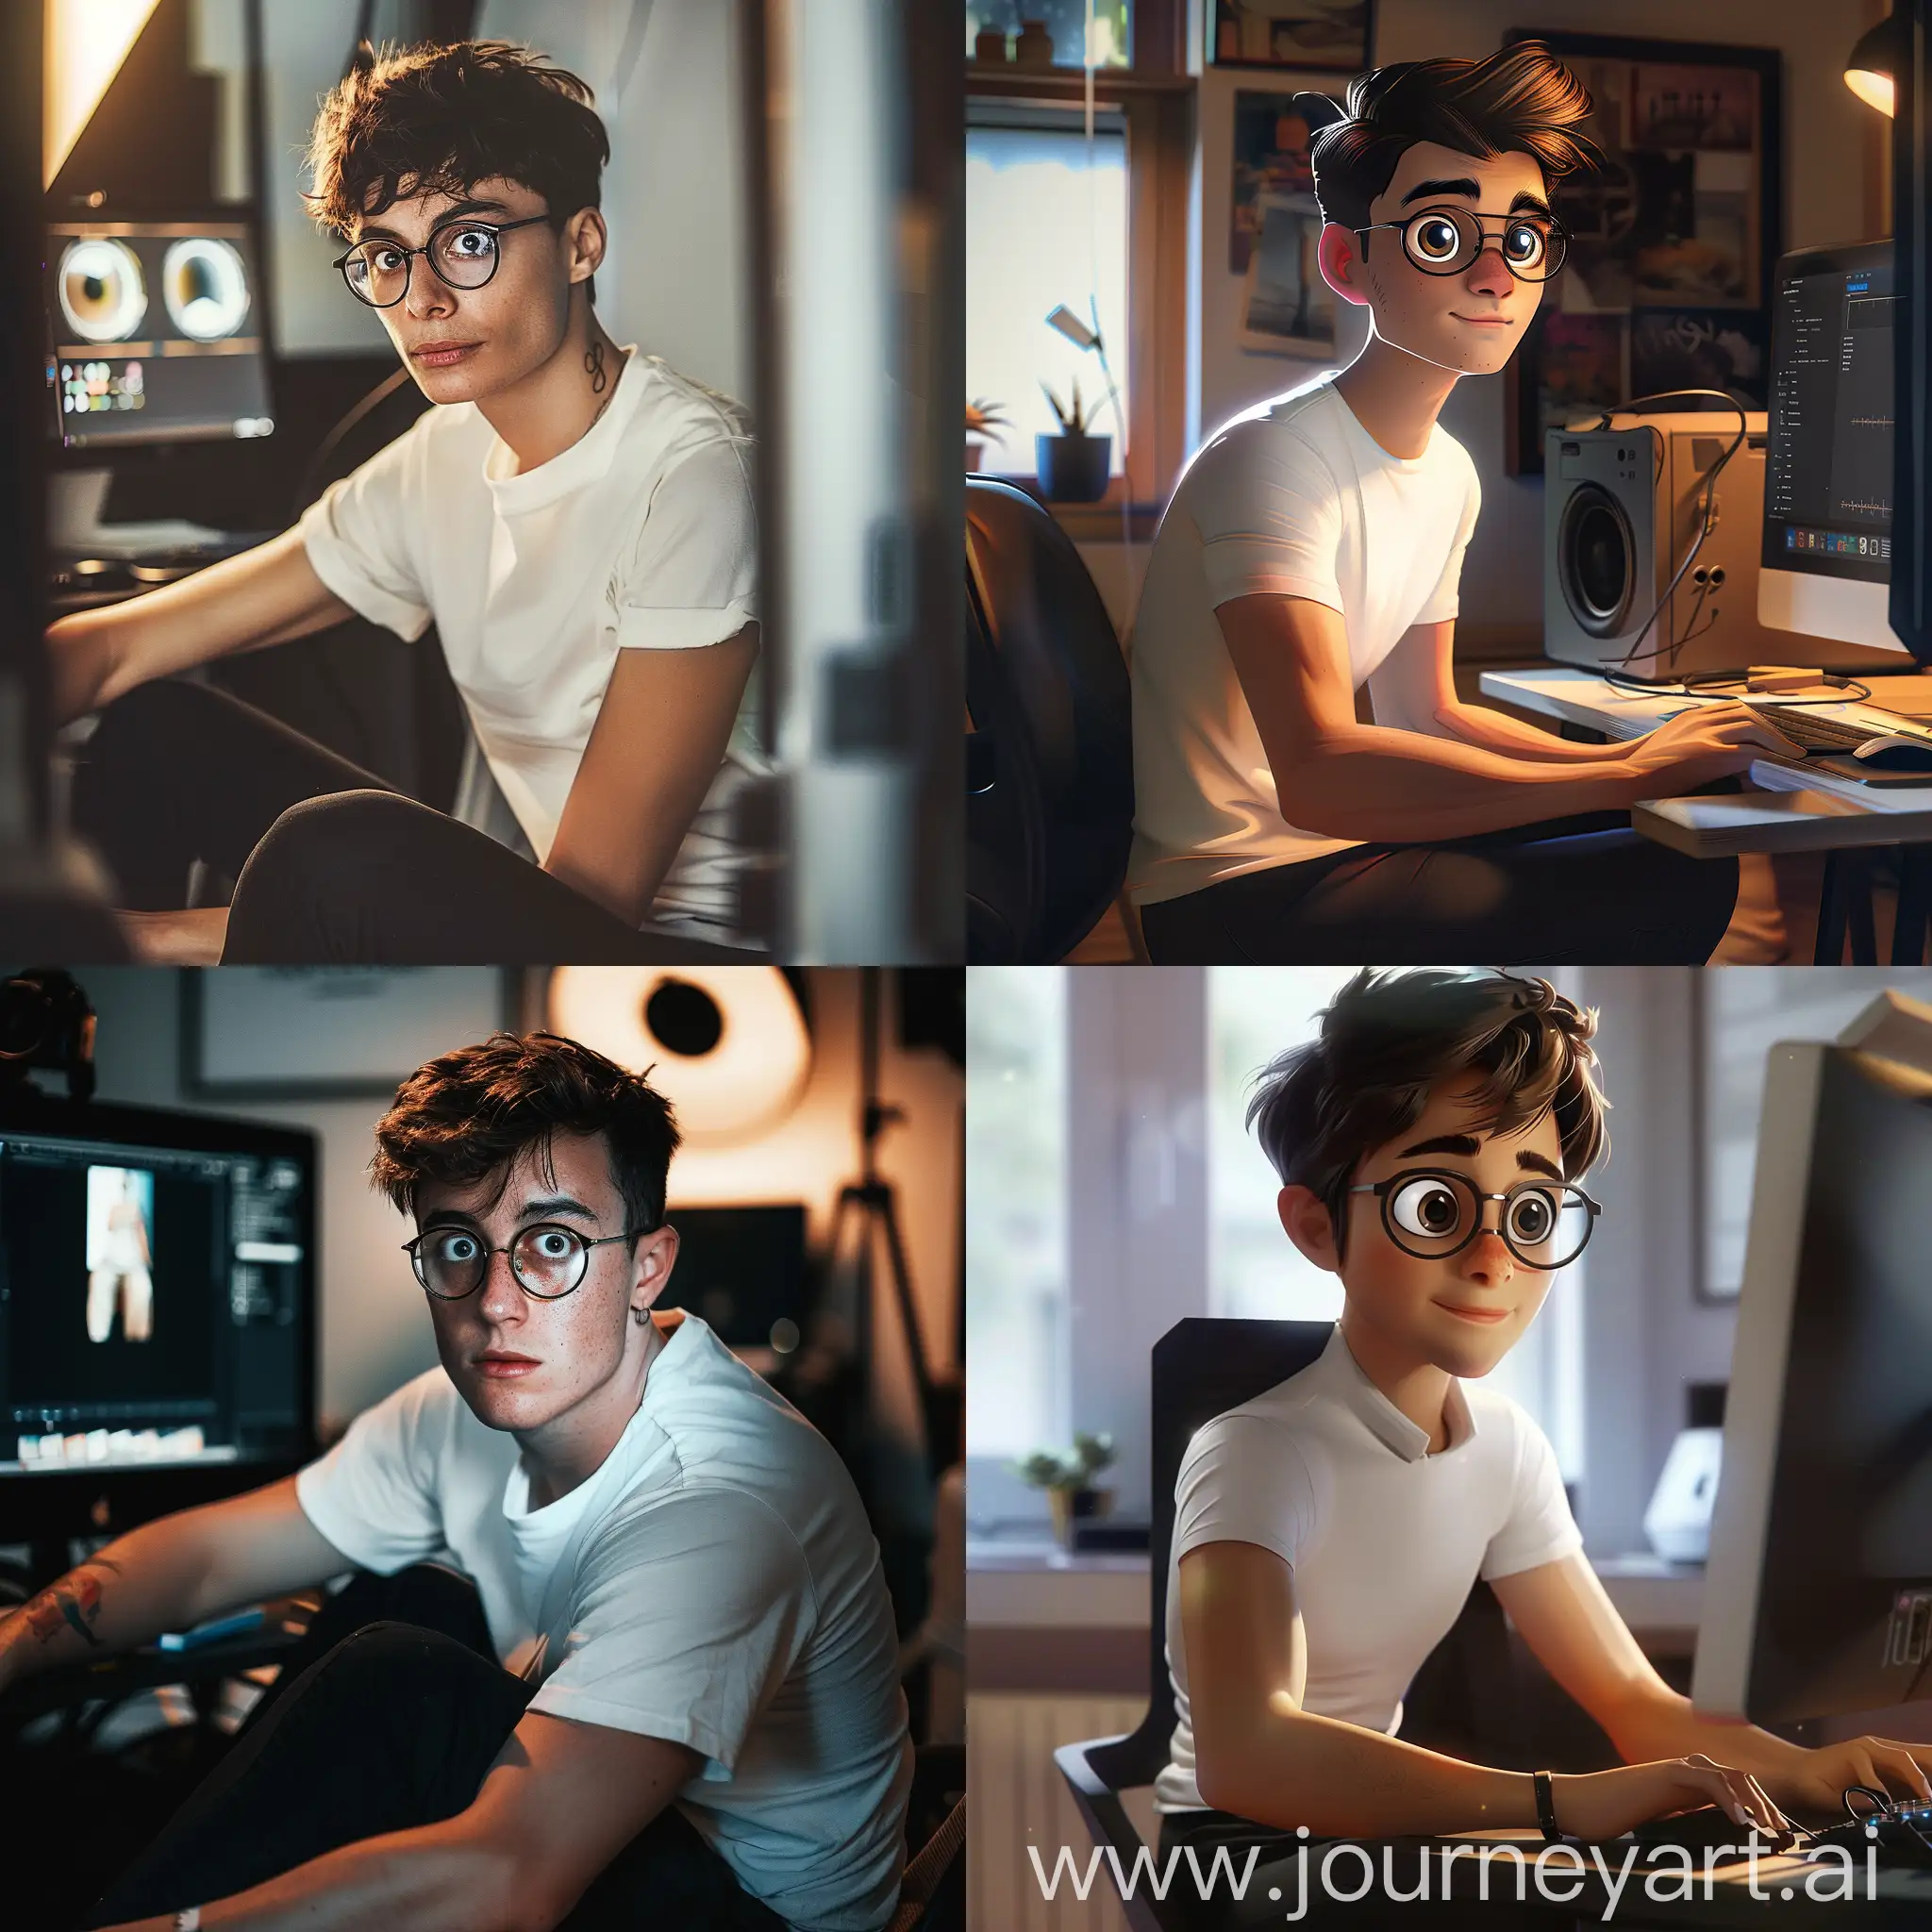 制作一个在海马体照相馆上班的修图师照片，男生，戴眼镜，短发，大眼睛，白色短袖黑色裤子，坐在电脑前。光线温和，细节丰富。